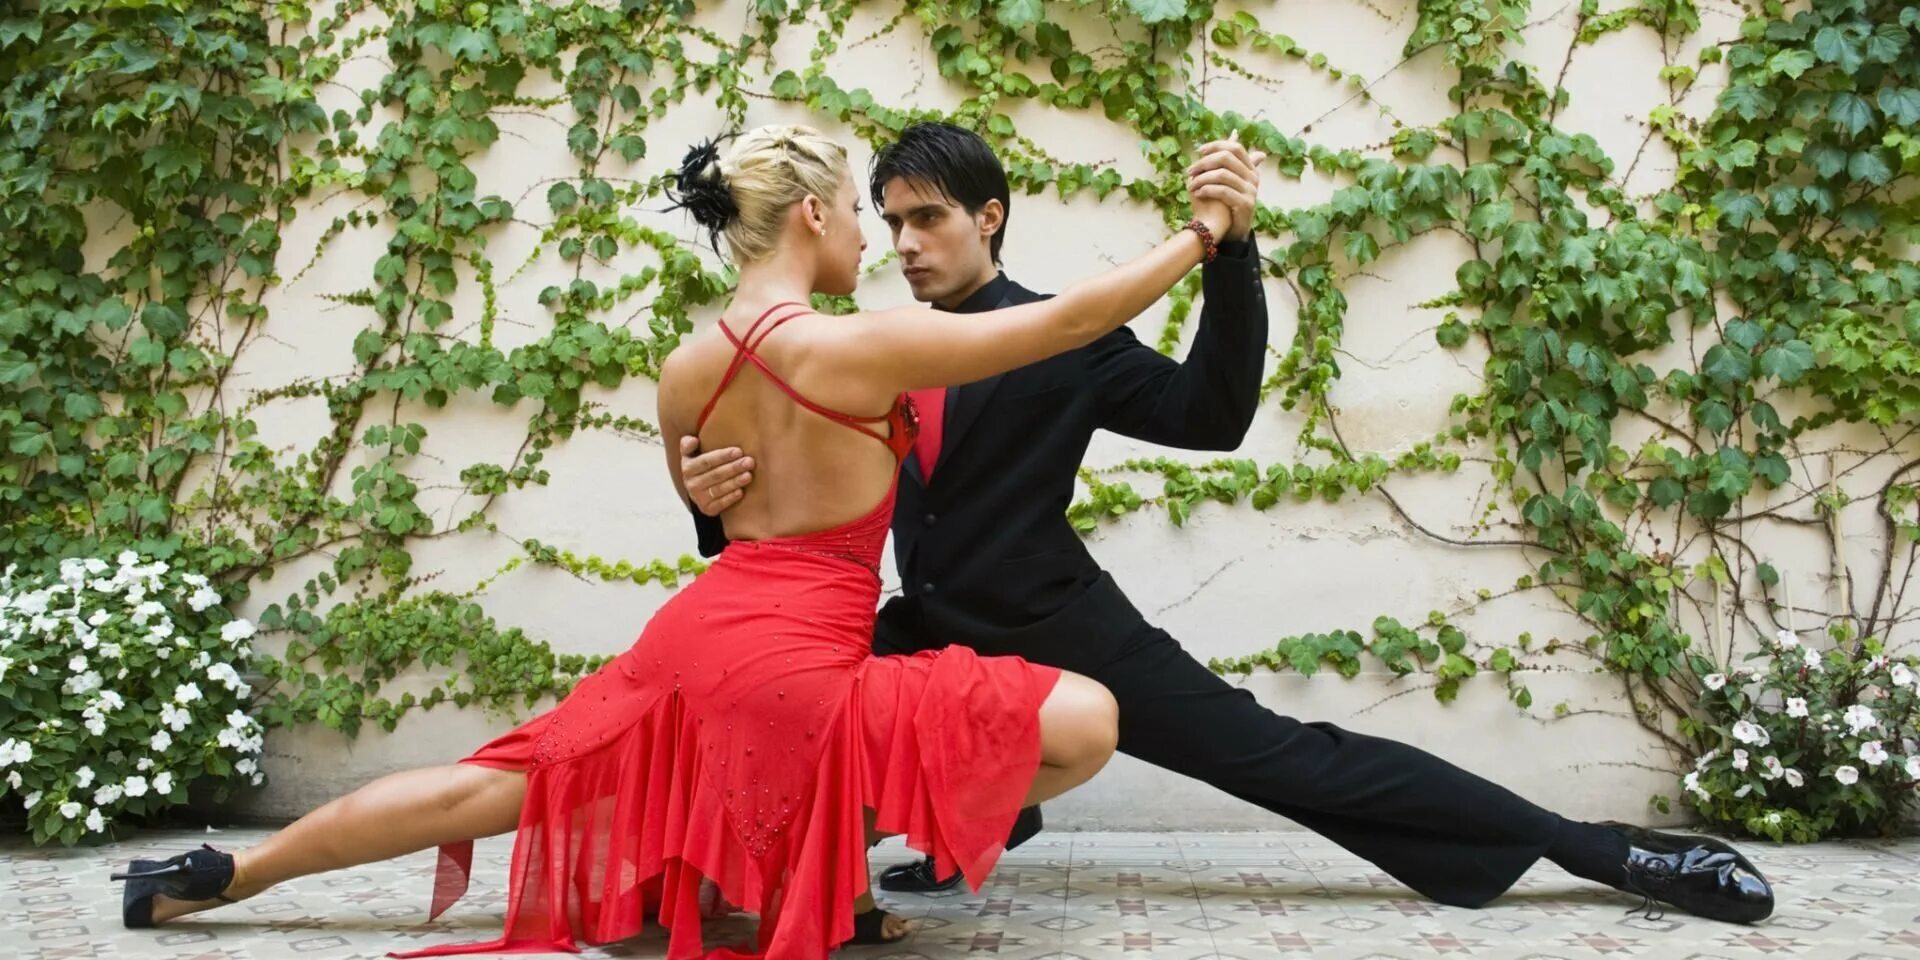 Аргентинское танго. Танец пары. Романтический танец. Танго танец. Показать красивые танцы